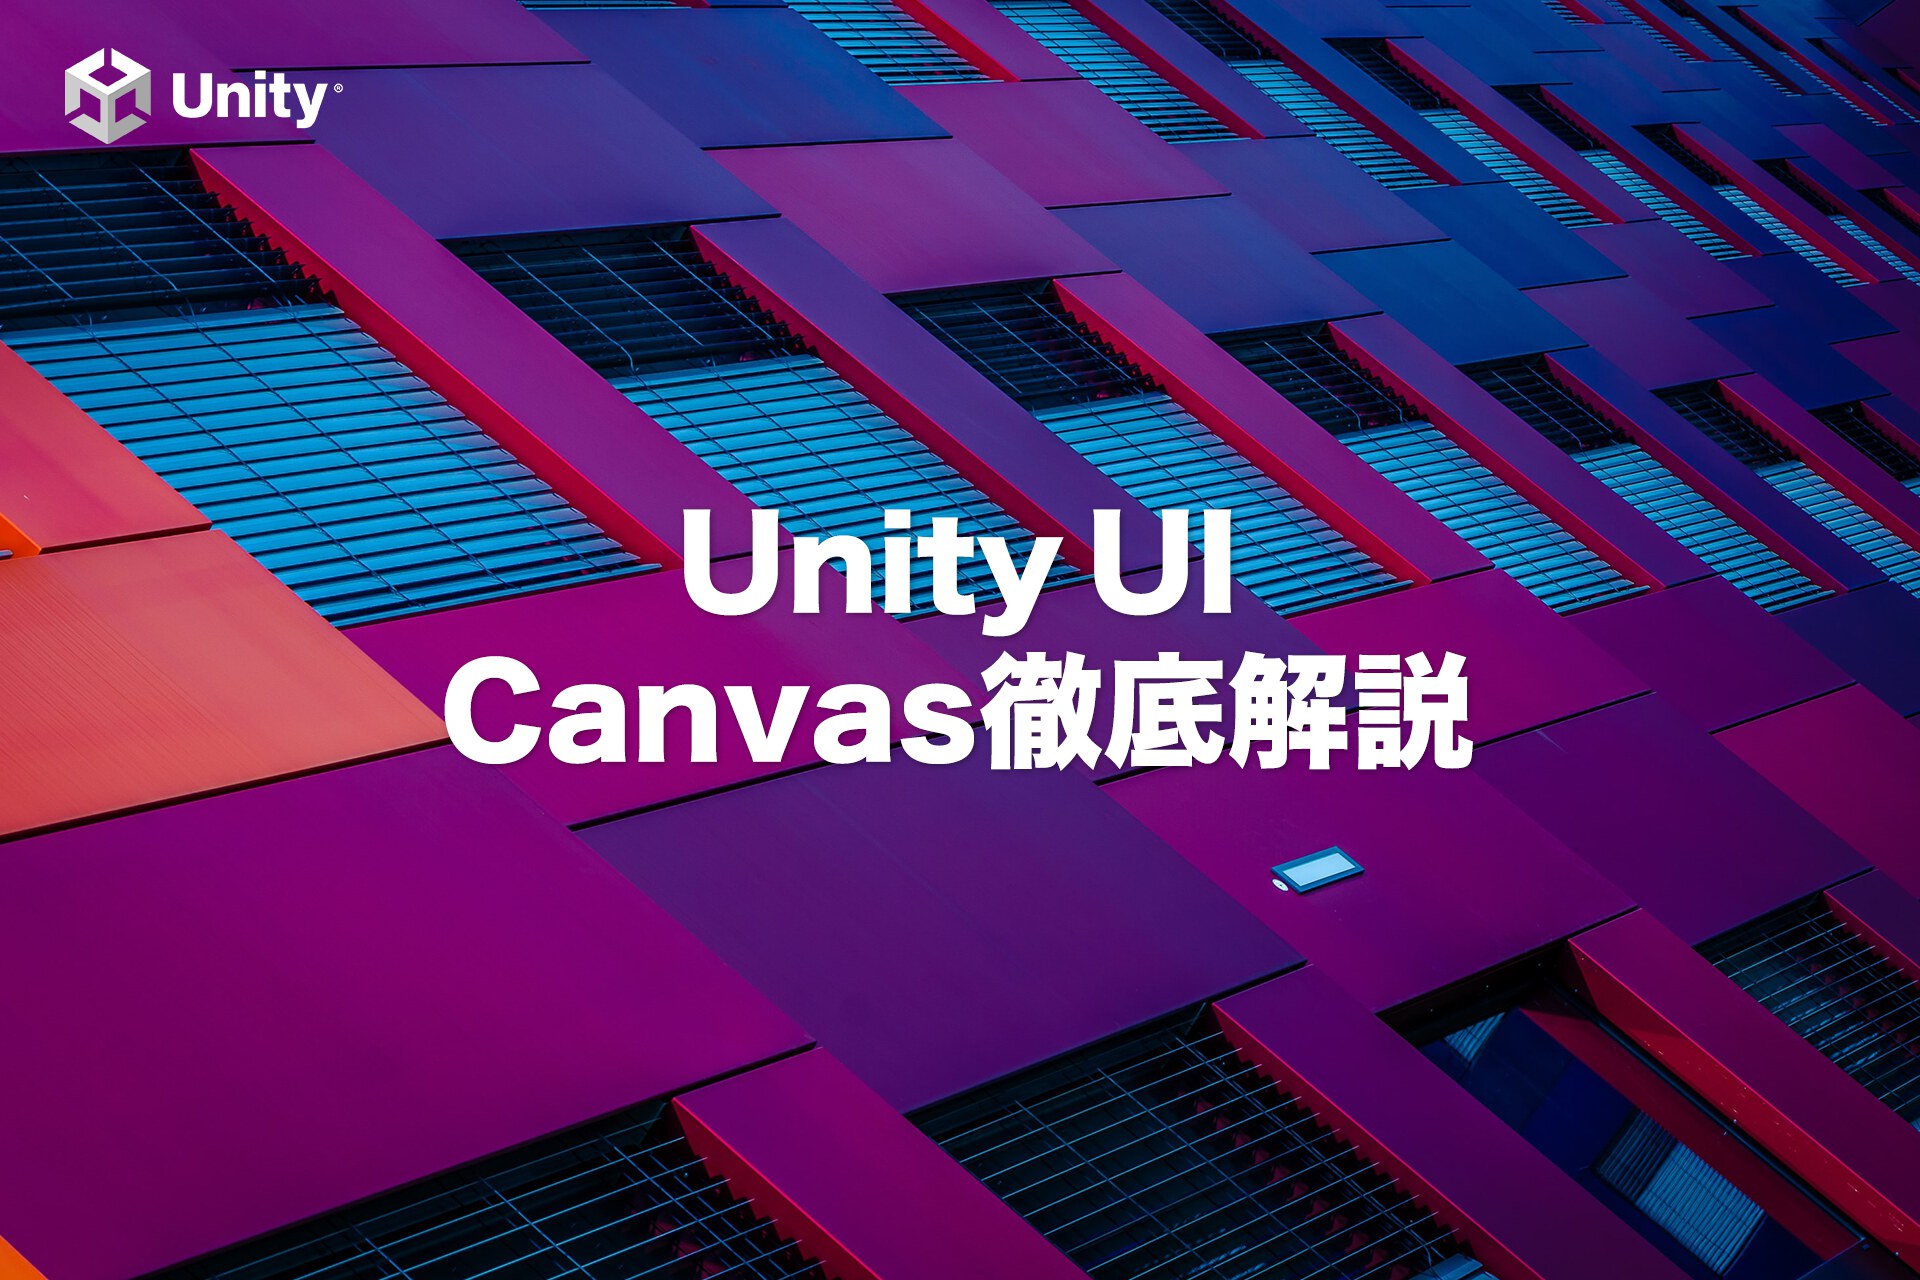 【Unity UI】知らないと損するスマホ向けCanvas設定